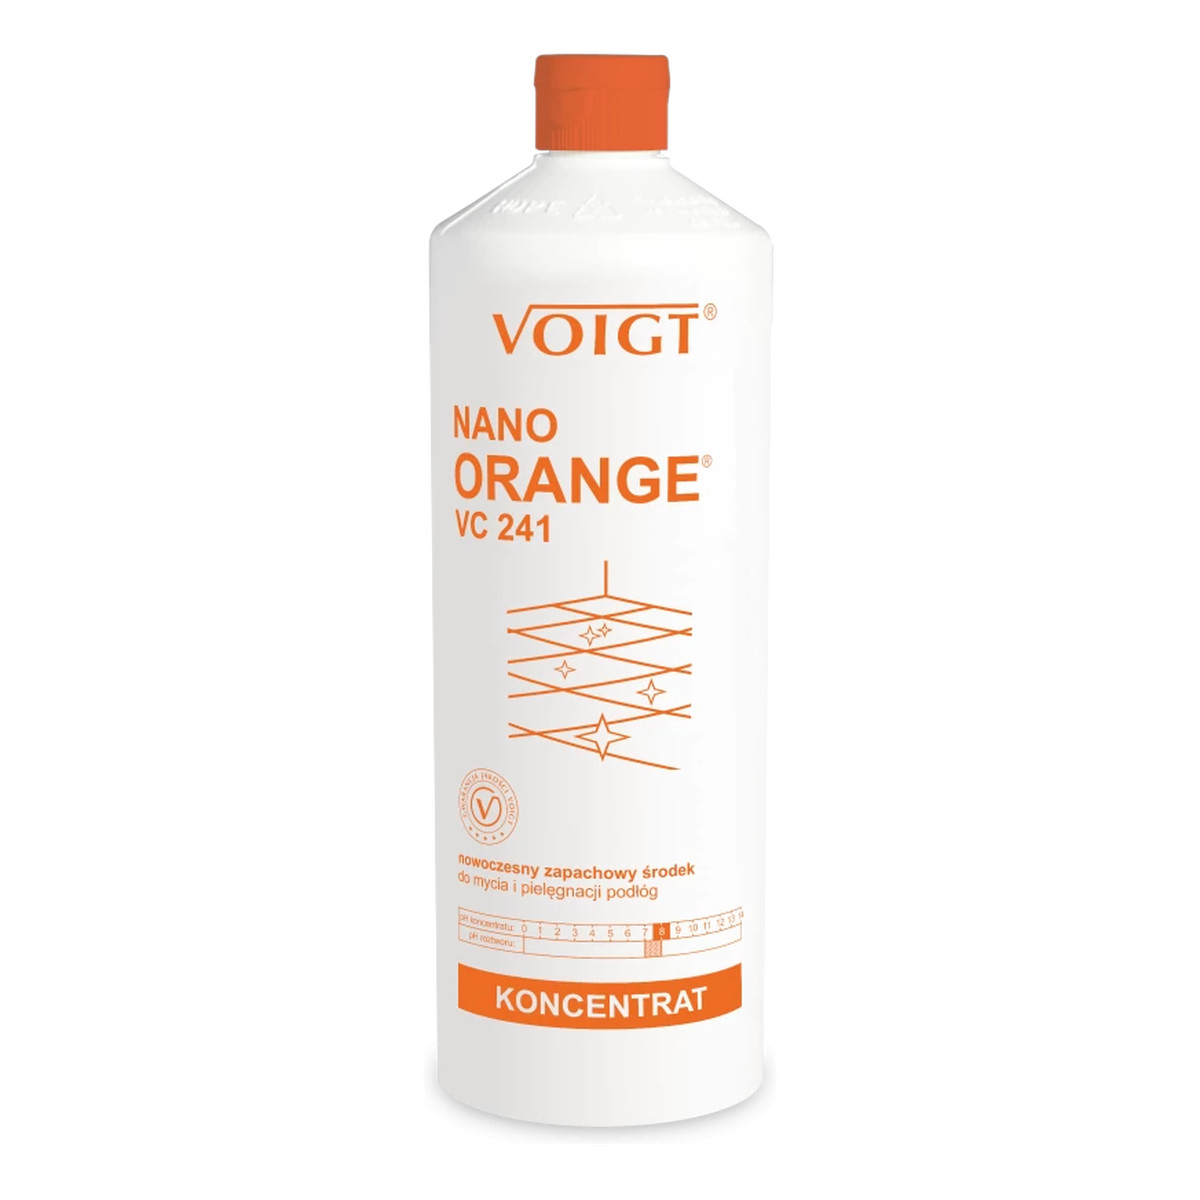 Voigt Nano Orange Nowoczesny zapachowy środek do mycia i pielęgnacji podłóg VC241 1000ml